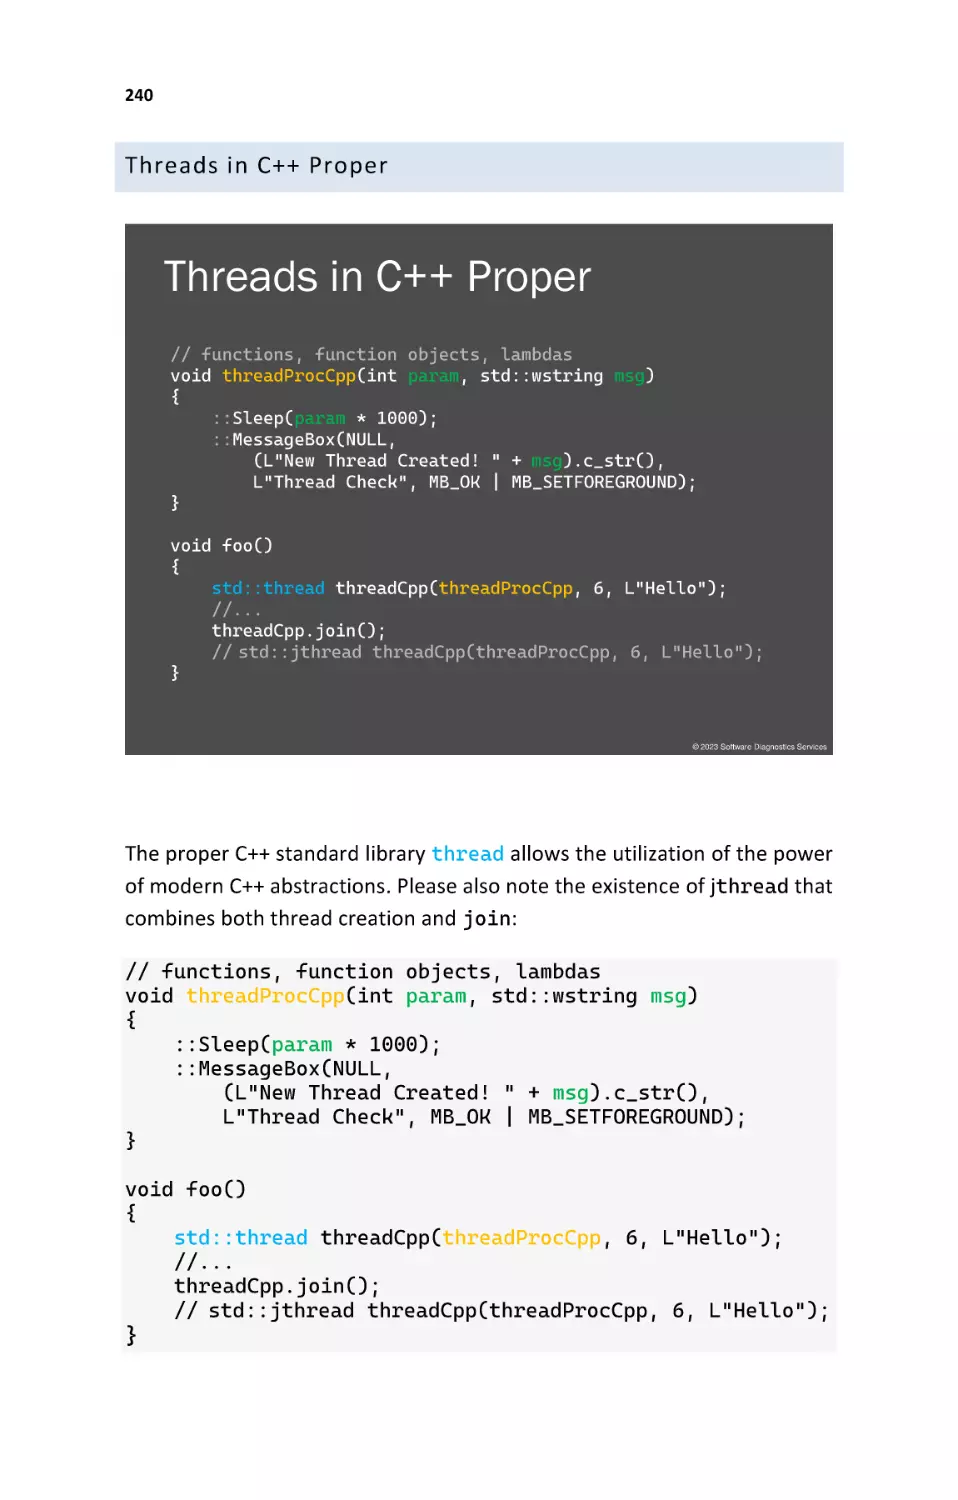 Threads in C++ Proper